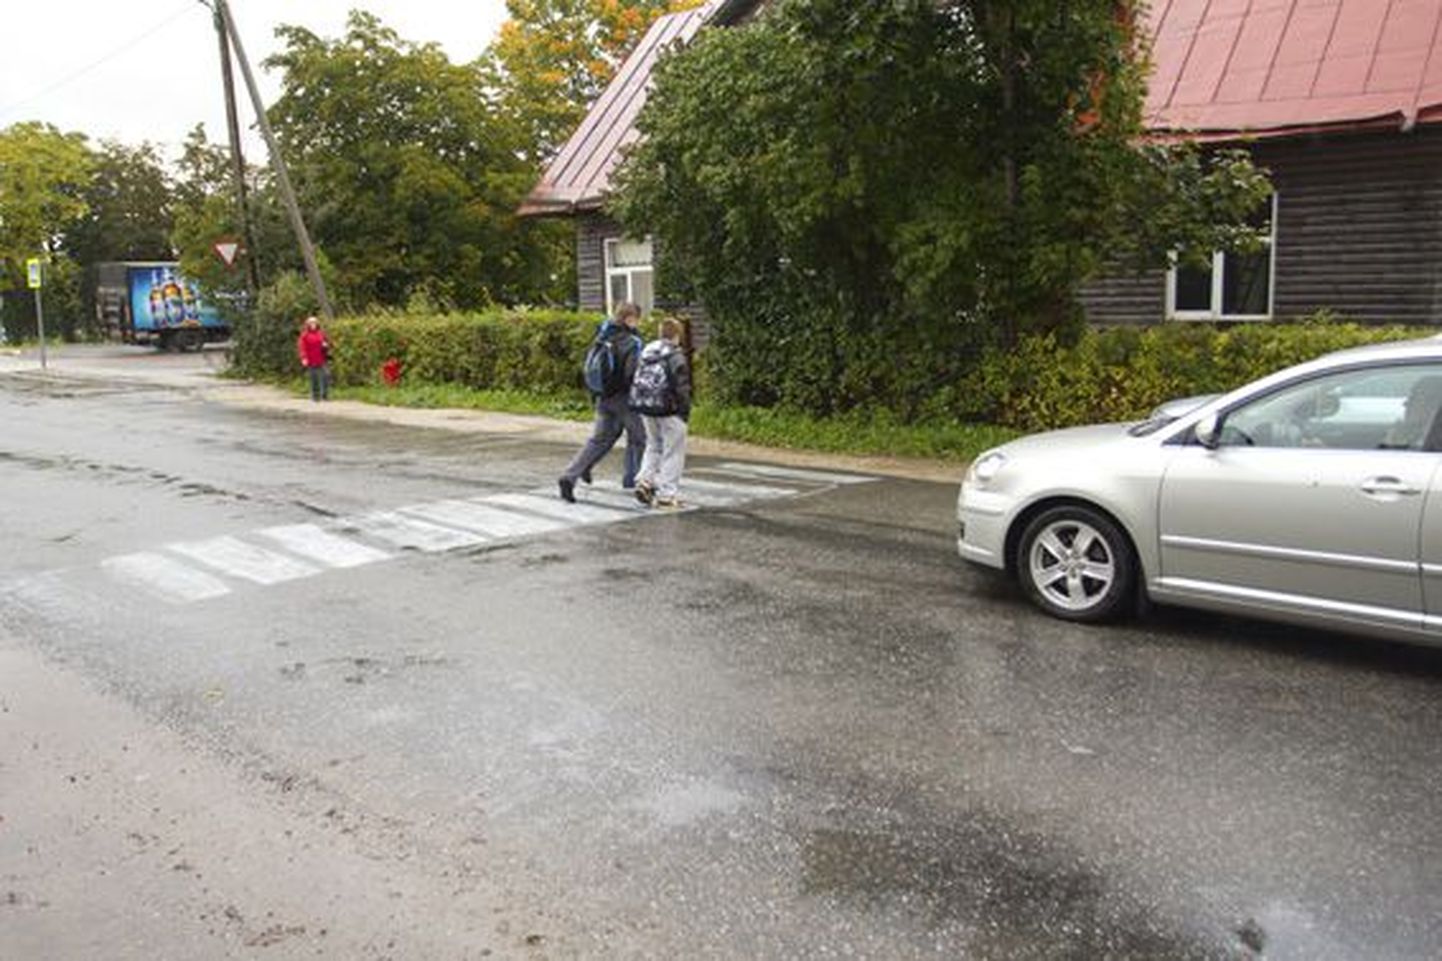 Rakvere linnavalitsus otsustas paigaldada Rakveresse Tuleviku ja Võidu tänava ristmikule märgi "Jalakäijad".